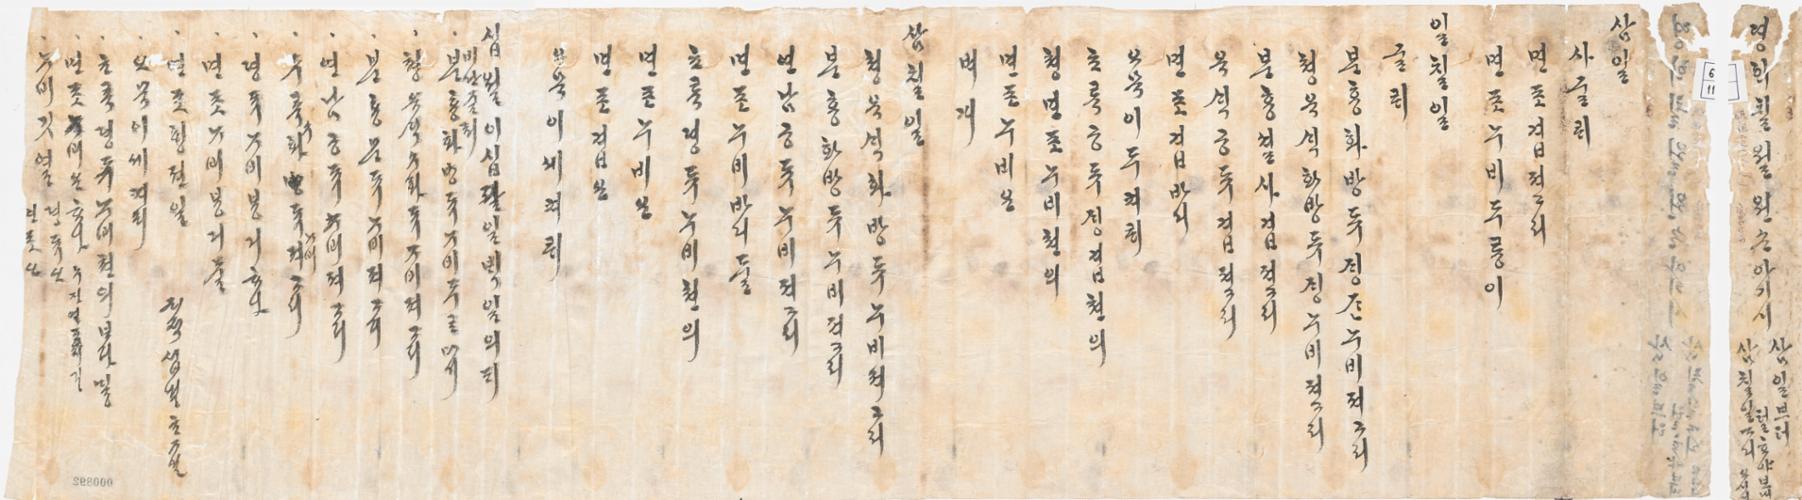 1_1827년 7월 원손 아기씨 탄생 후 의복 발기.jpg